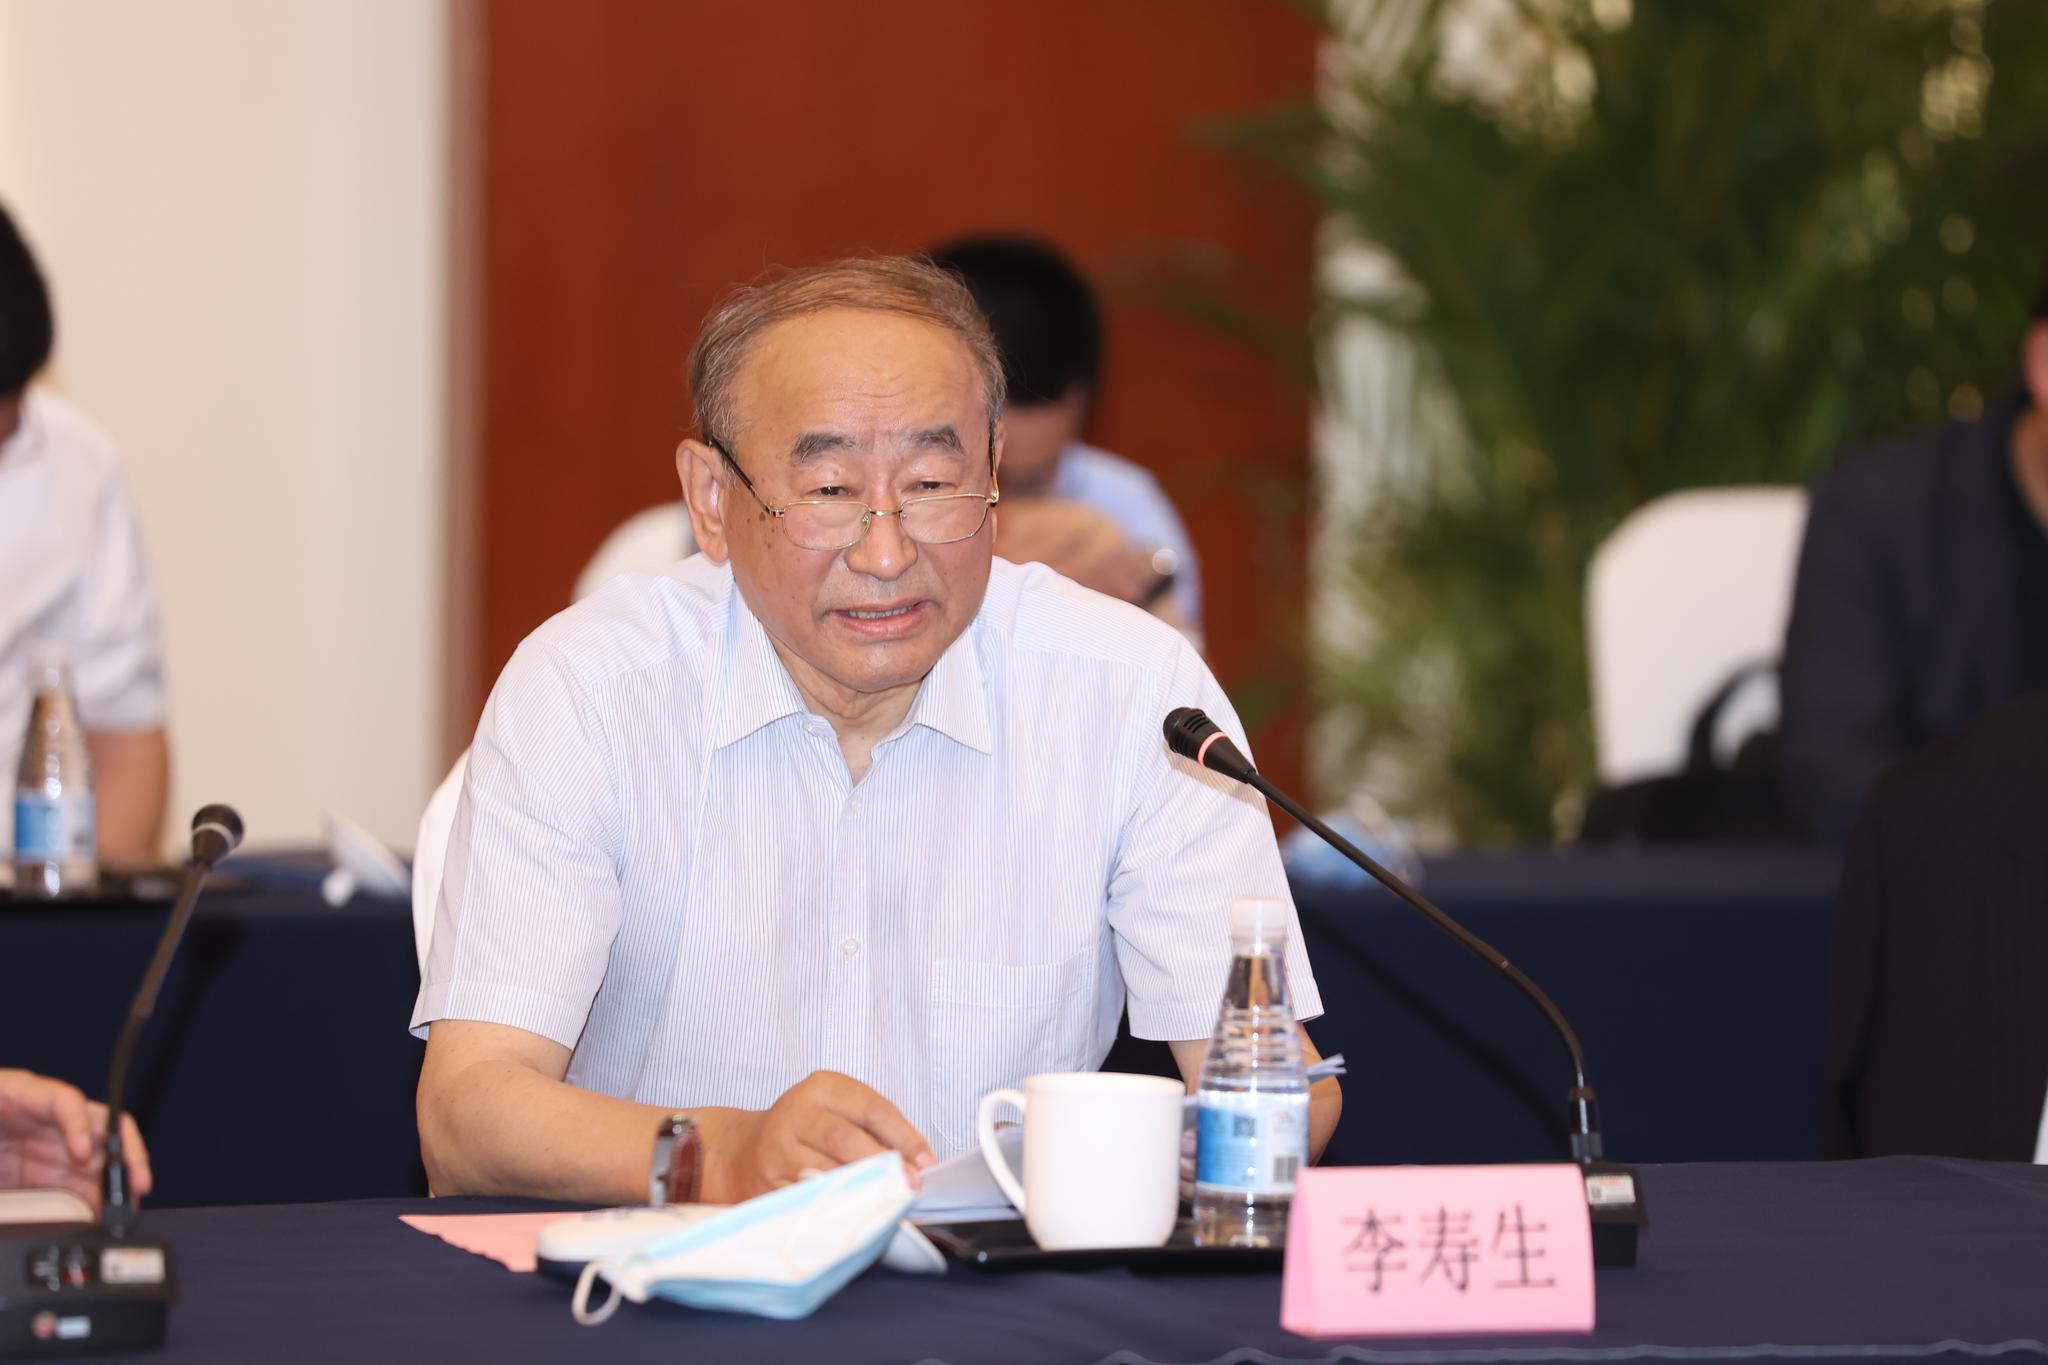 中国石油和化学工业联合会会长李寿生在研讨会上发言